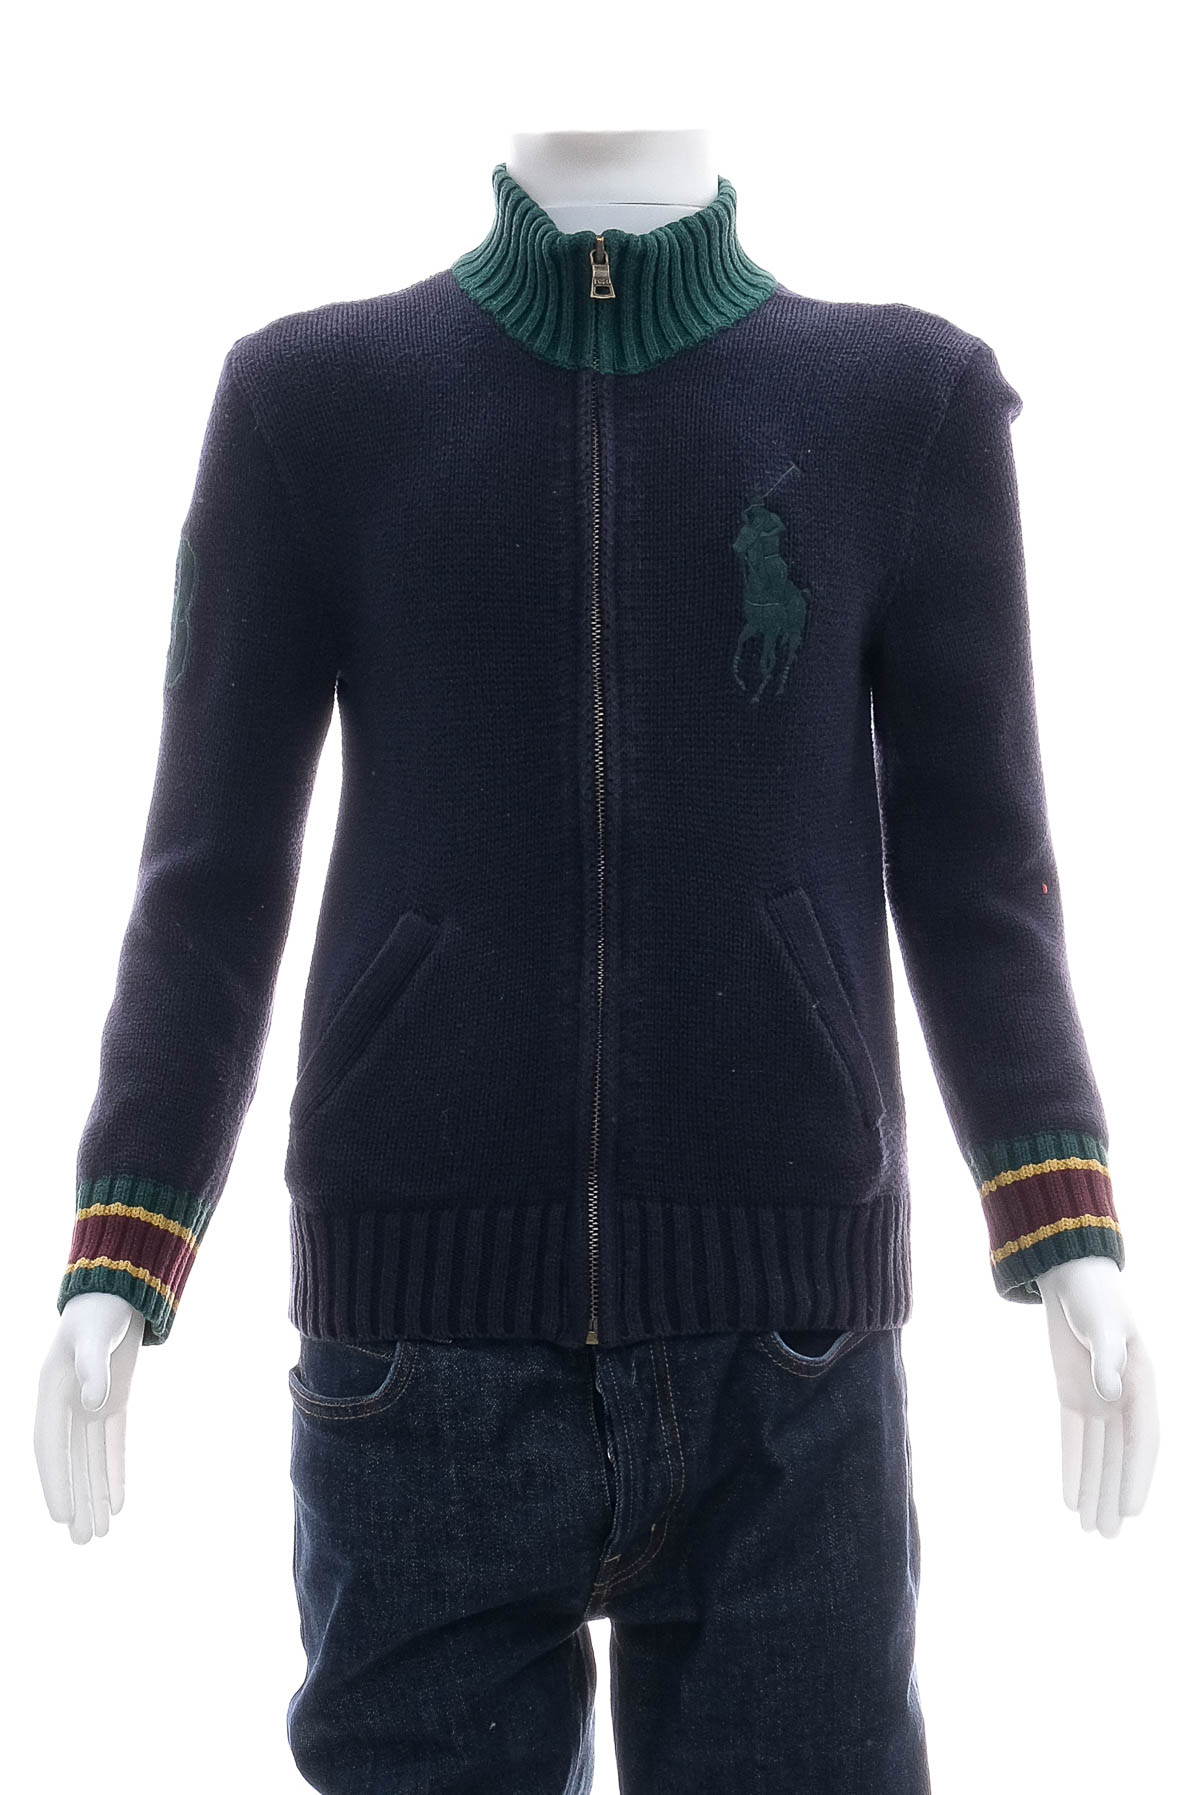 Jacheta pentru băiat - Polo by Ralph Lauren - 0